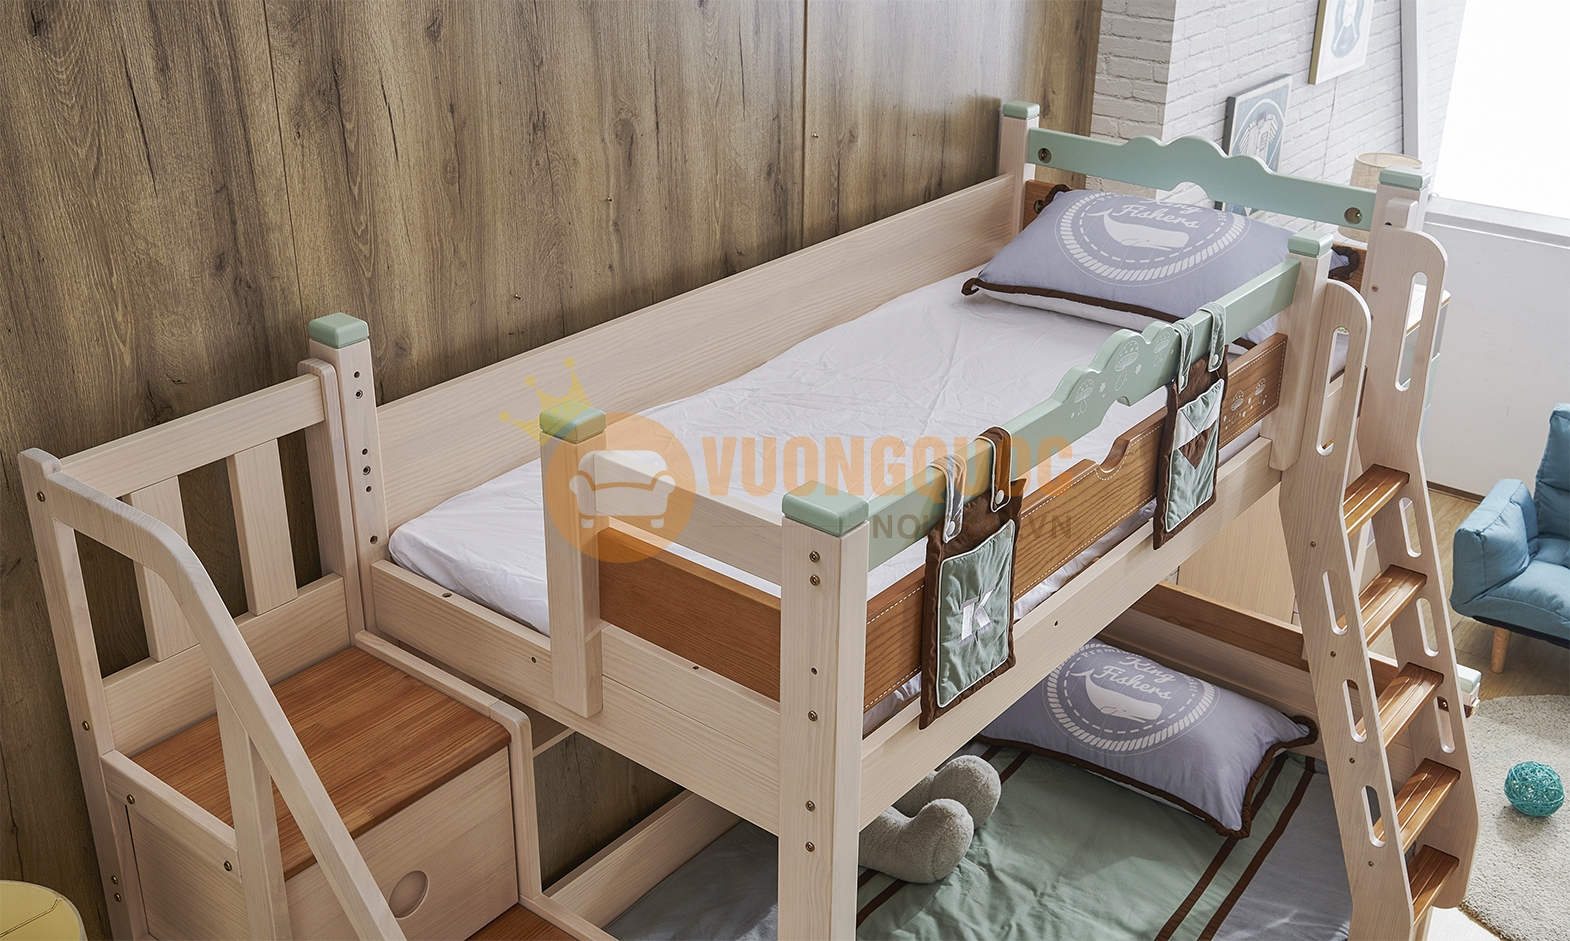 Giường tầng trẻ em hiện đại JVNA663 phần giường tầng hai